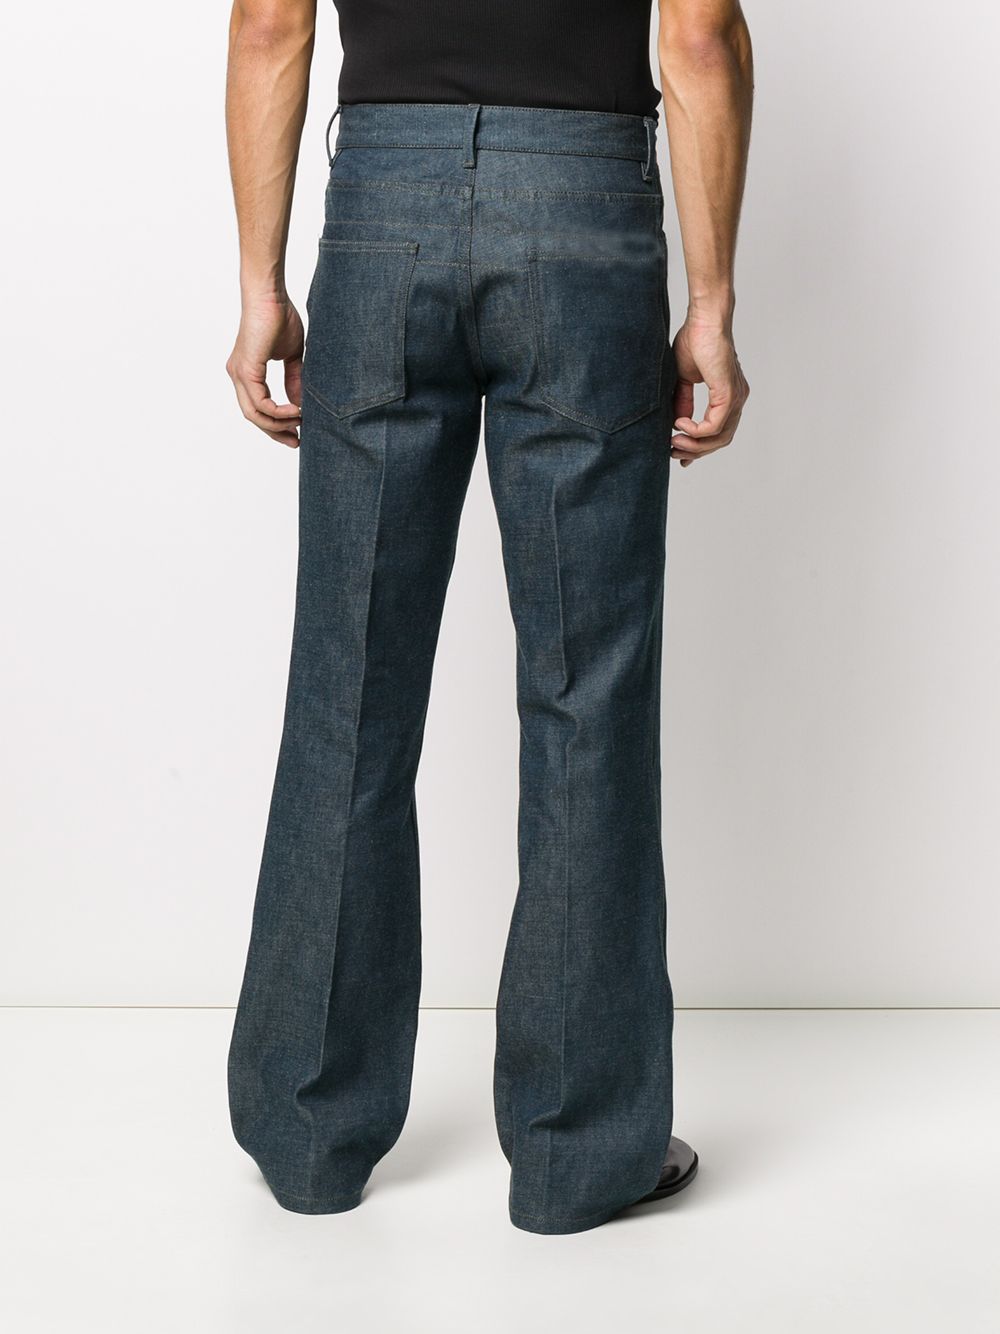 фото Lemaire расклешенные джинсы